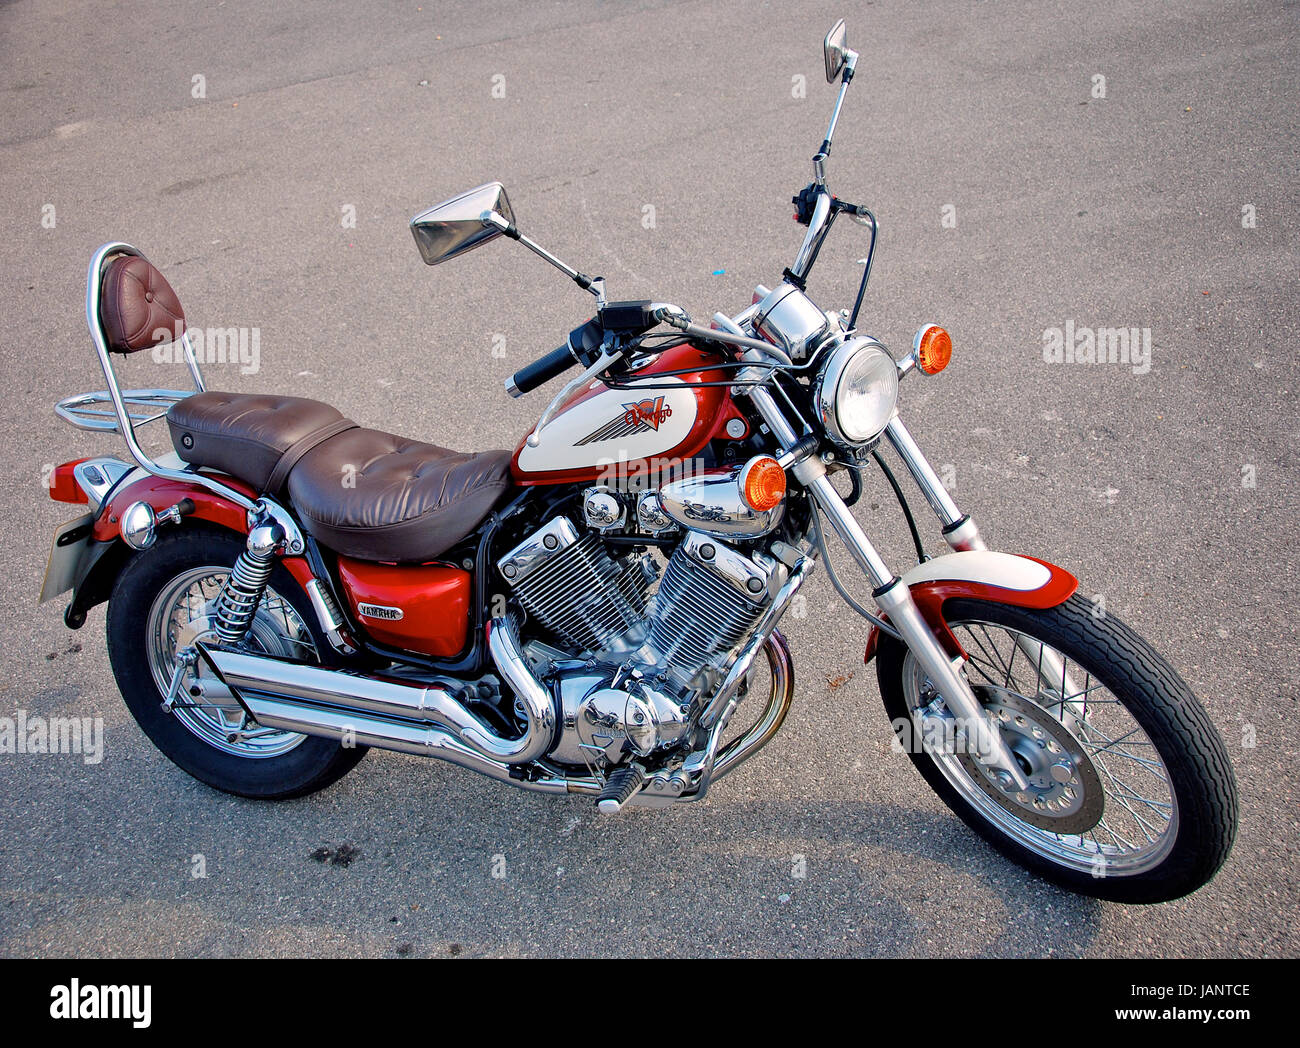 Yamaha Virago 535 motorcycle Stock Photo